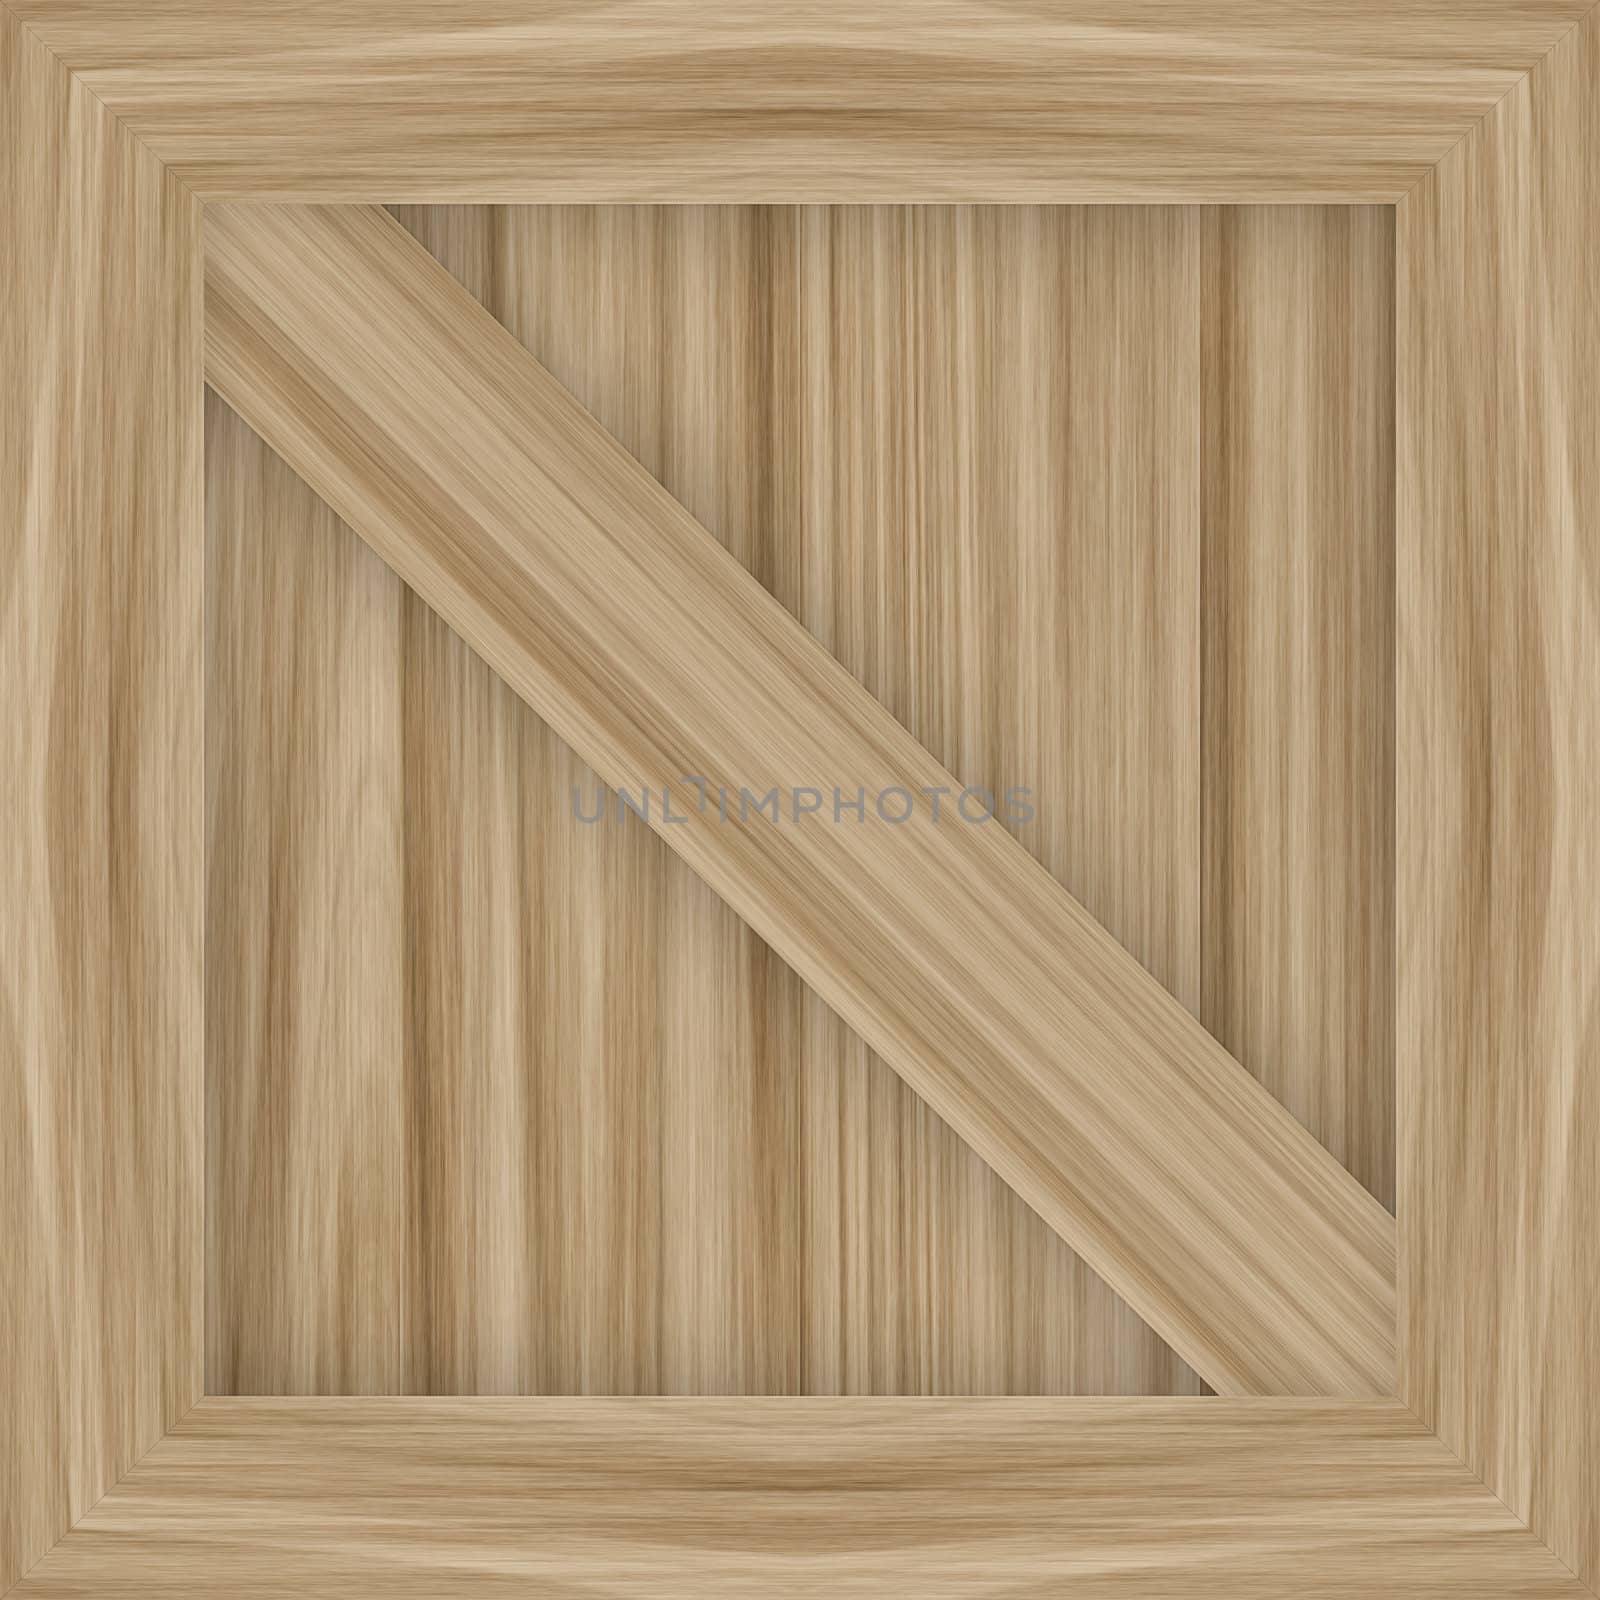 A wooden crate illustration / 3d render.